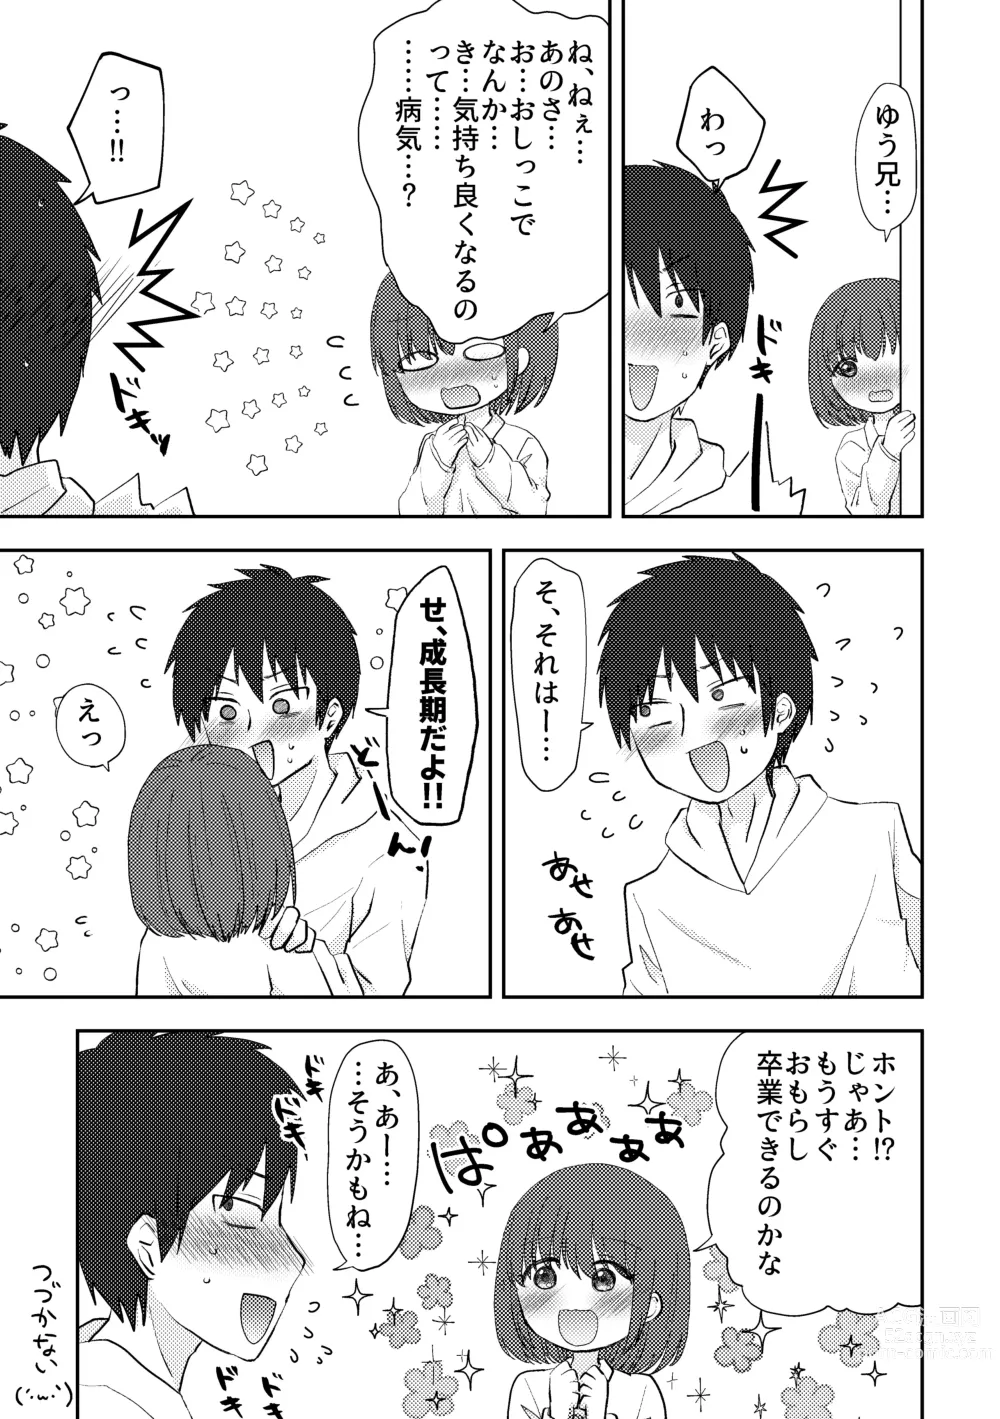 Page 6 of doujinshi Omorashi Iki Kuse ga Tsuichatta Musume